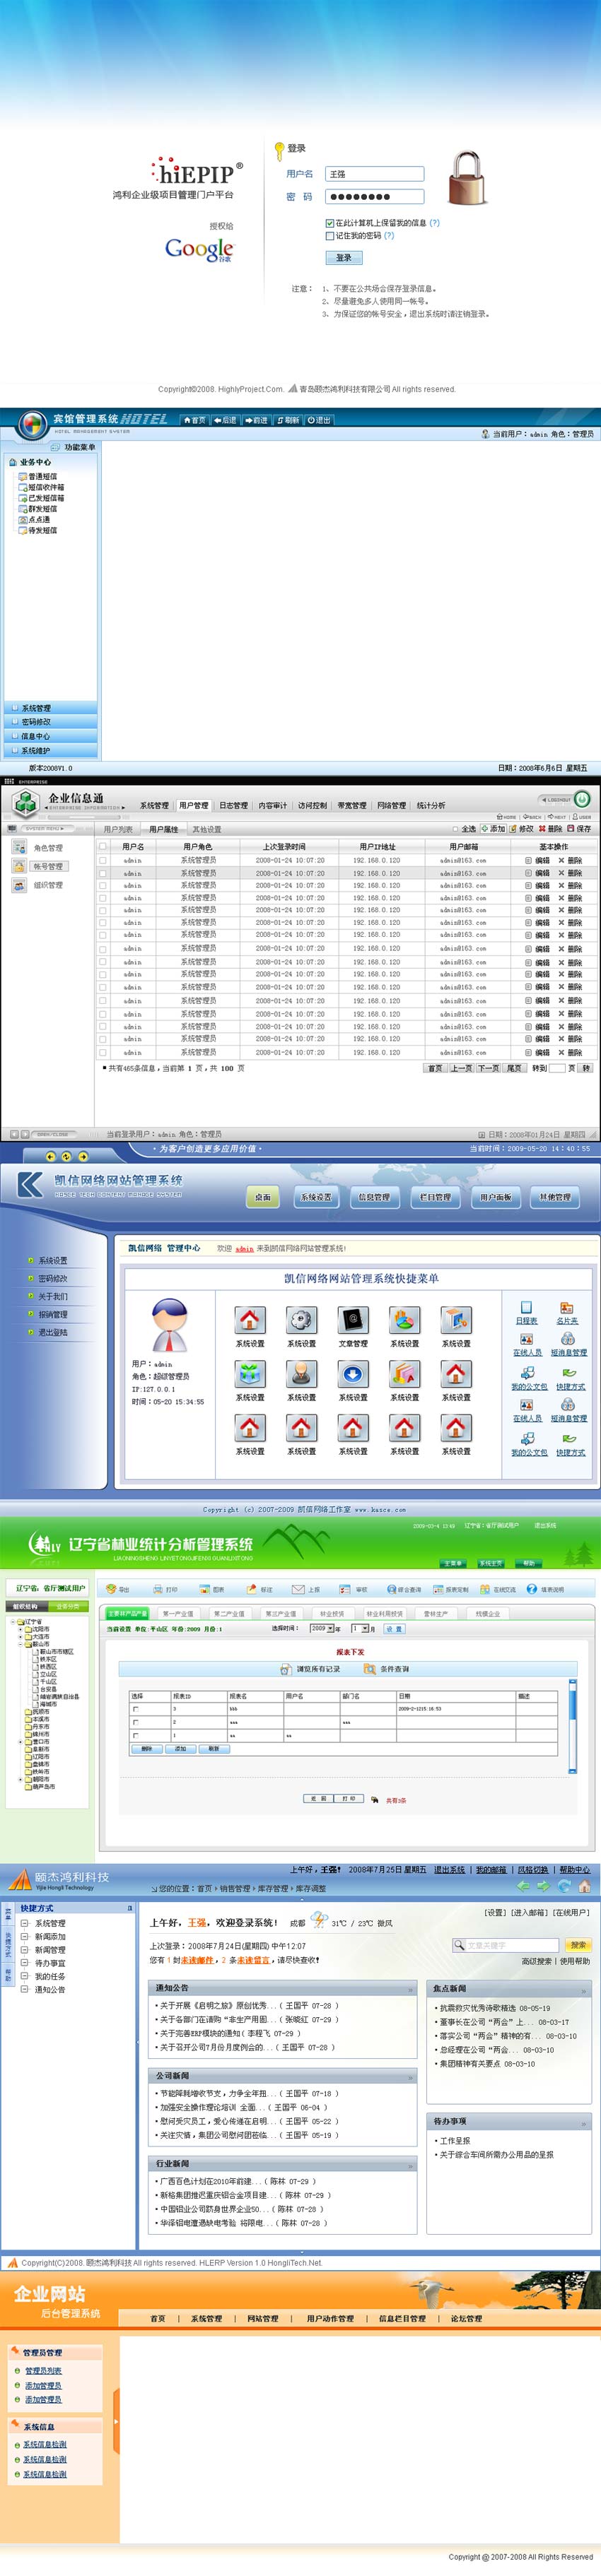 10套中文网站登录和中文网站后台管理界面模板psd下载